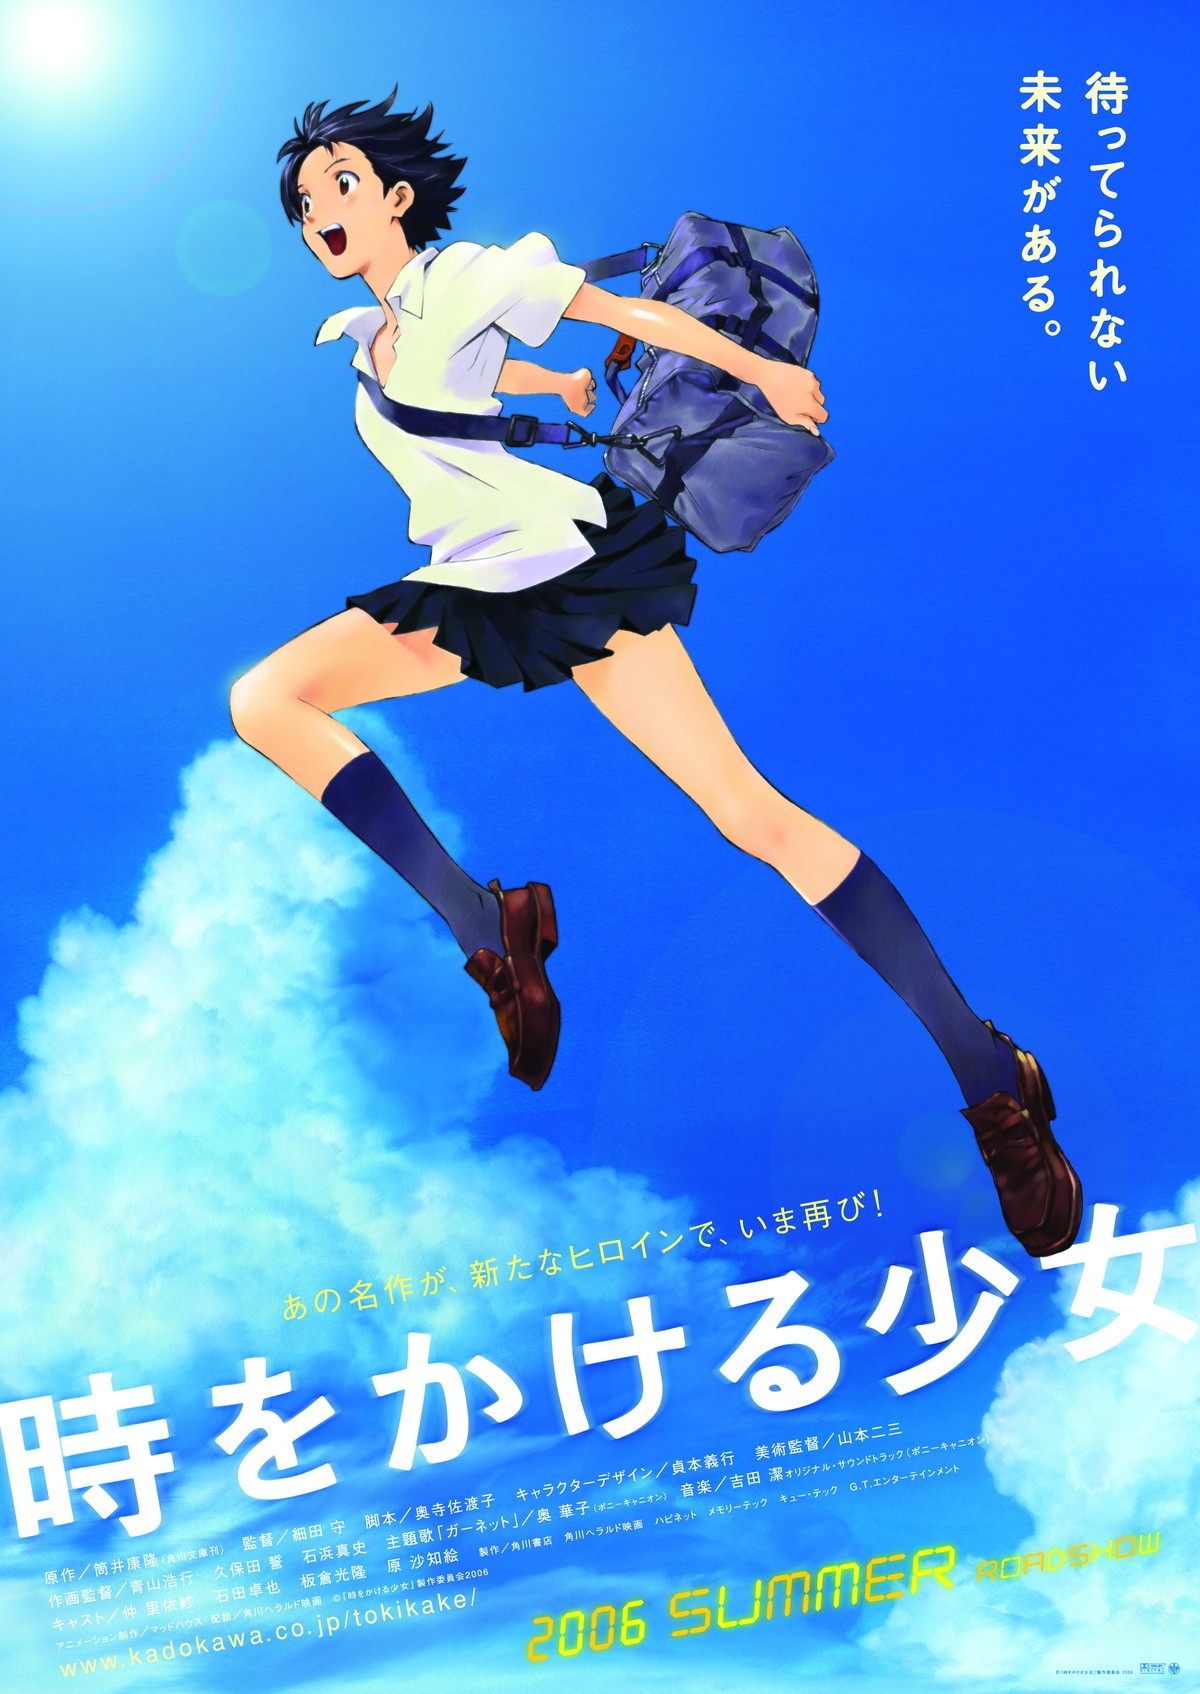 細田守『時をかける少女』4DX版、4.2より期間限定上映決定